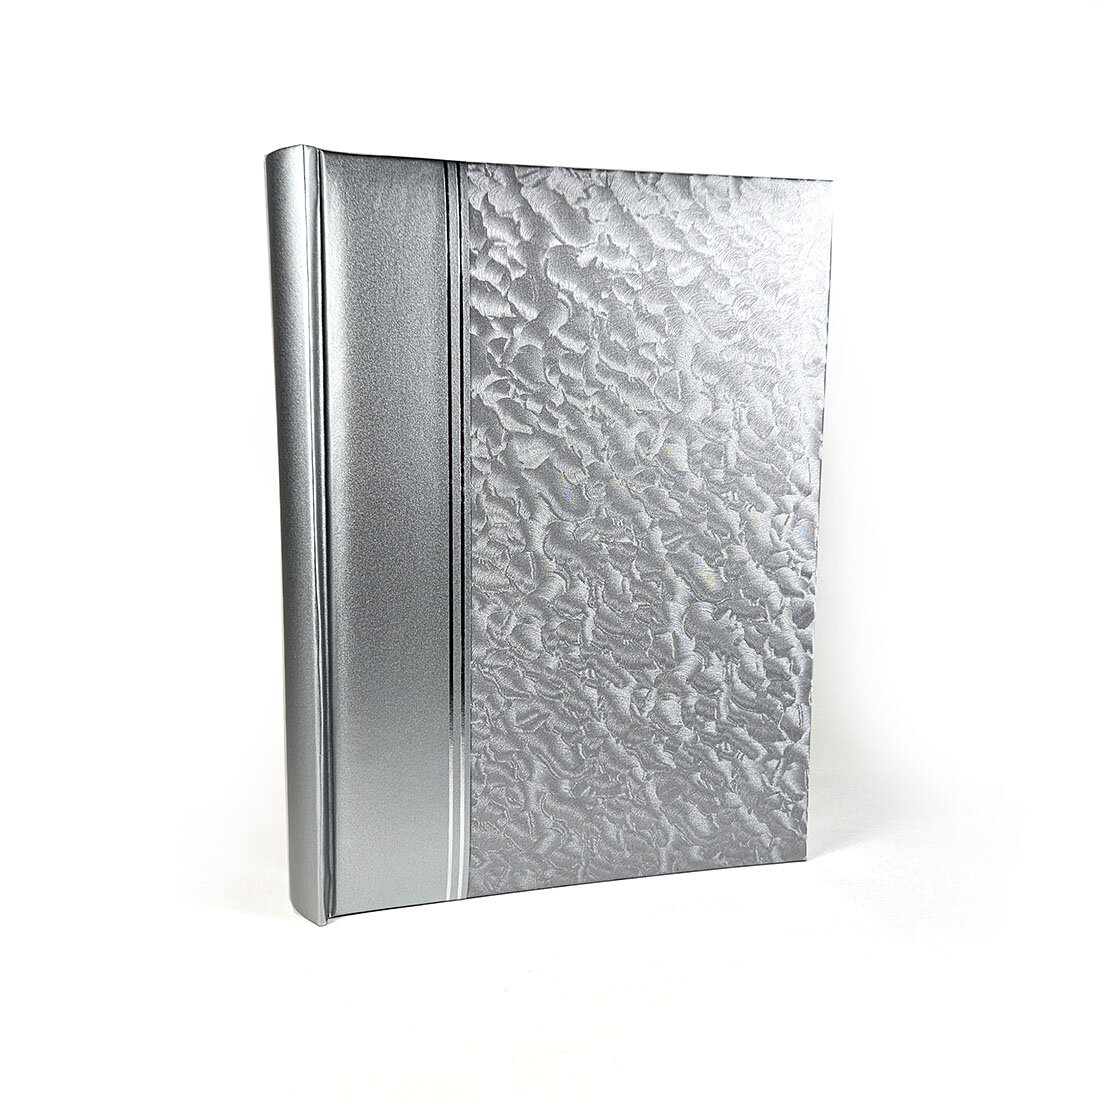 Классический фотоальбом, альбом для фотографий 10х15, 200 фото, песок, серый, серебряный GF 4908